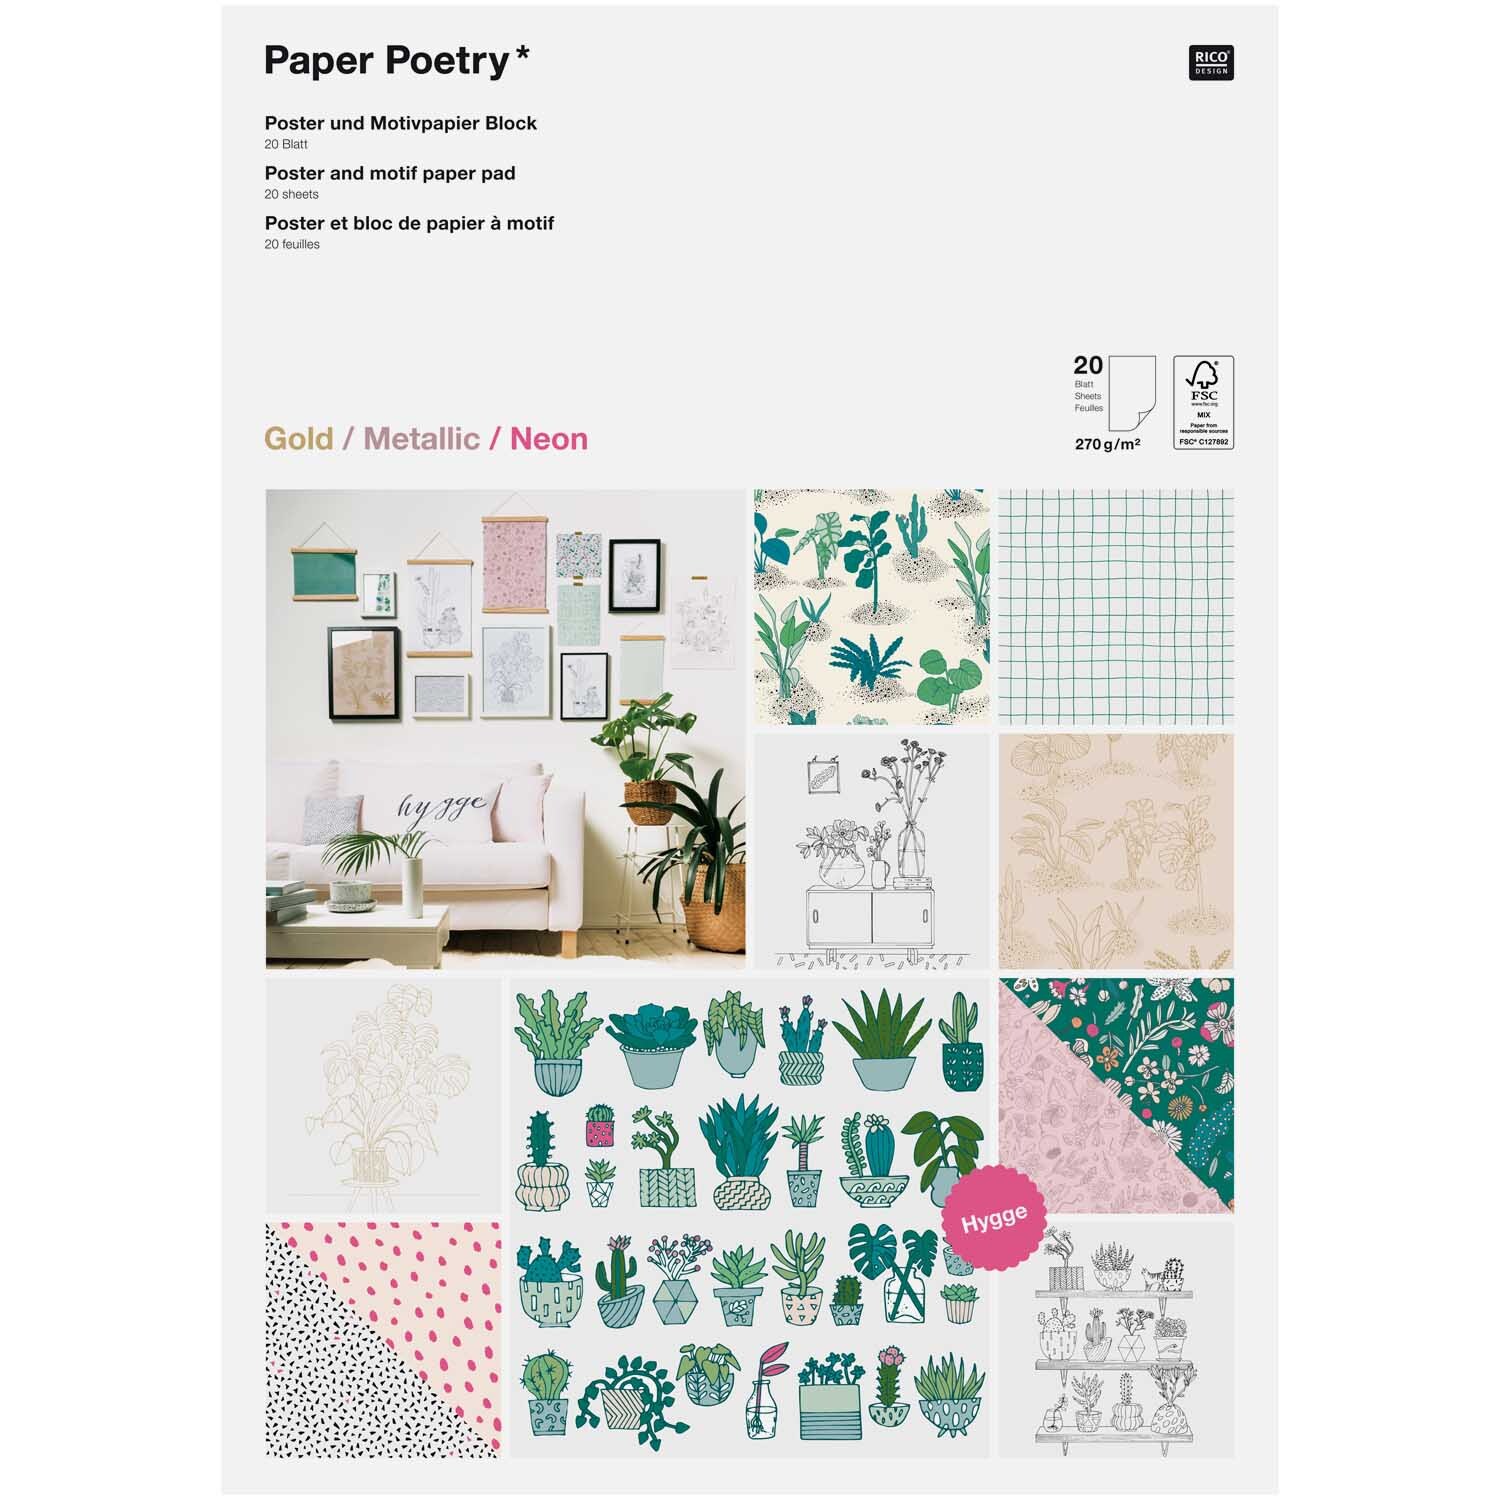 Paper Poetry Motivpapier Block Hygge DIN A3 20 Blatt